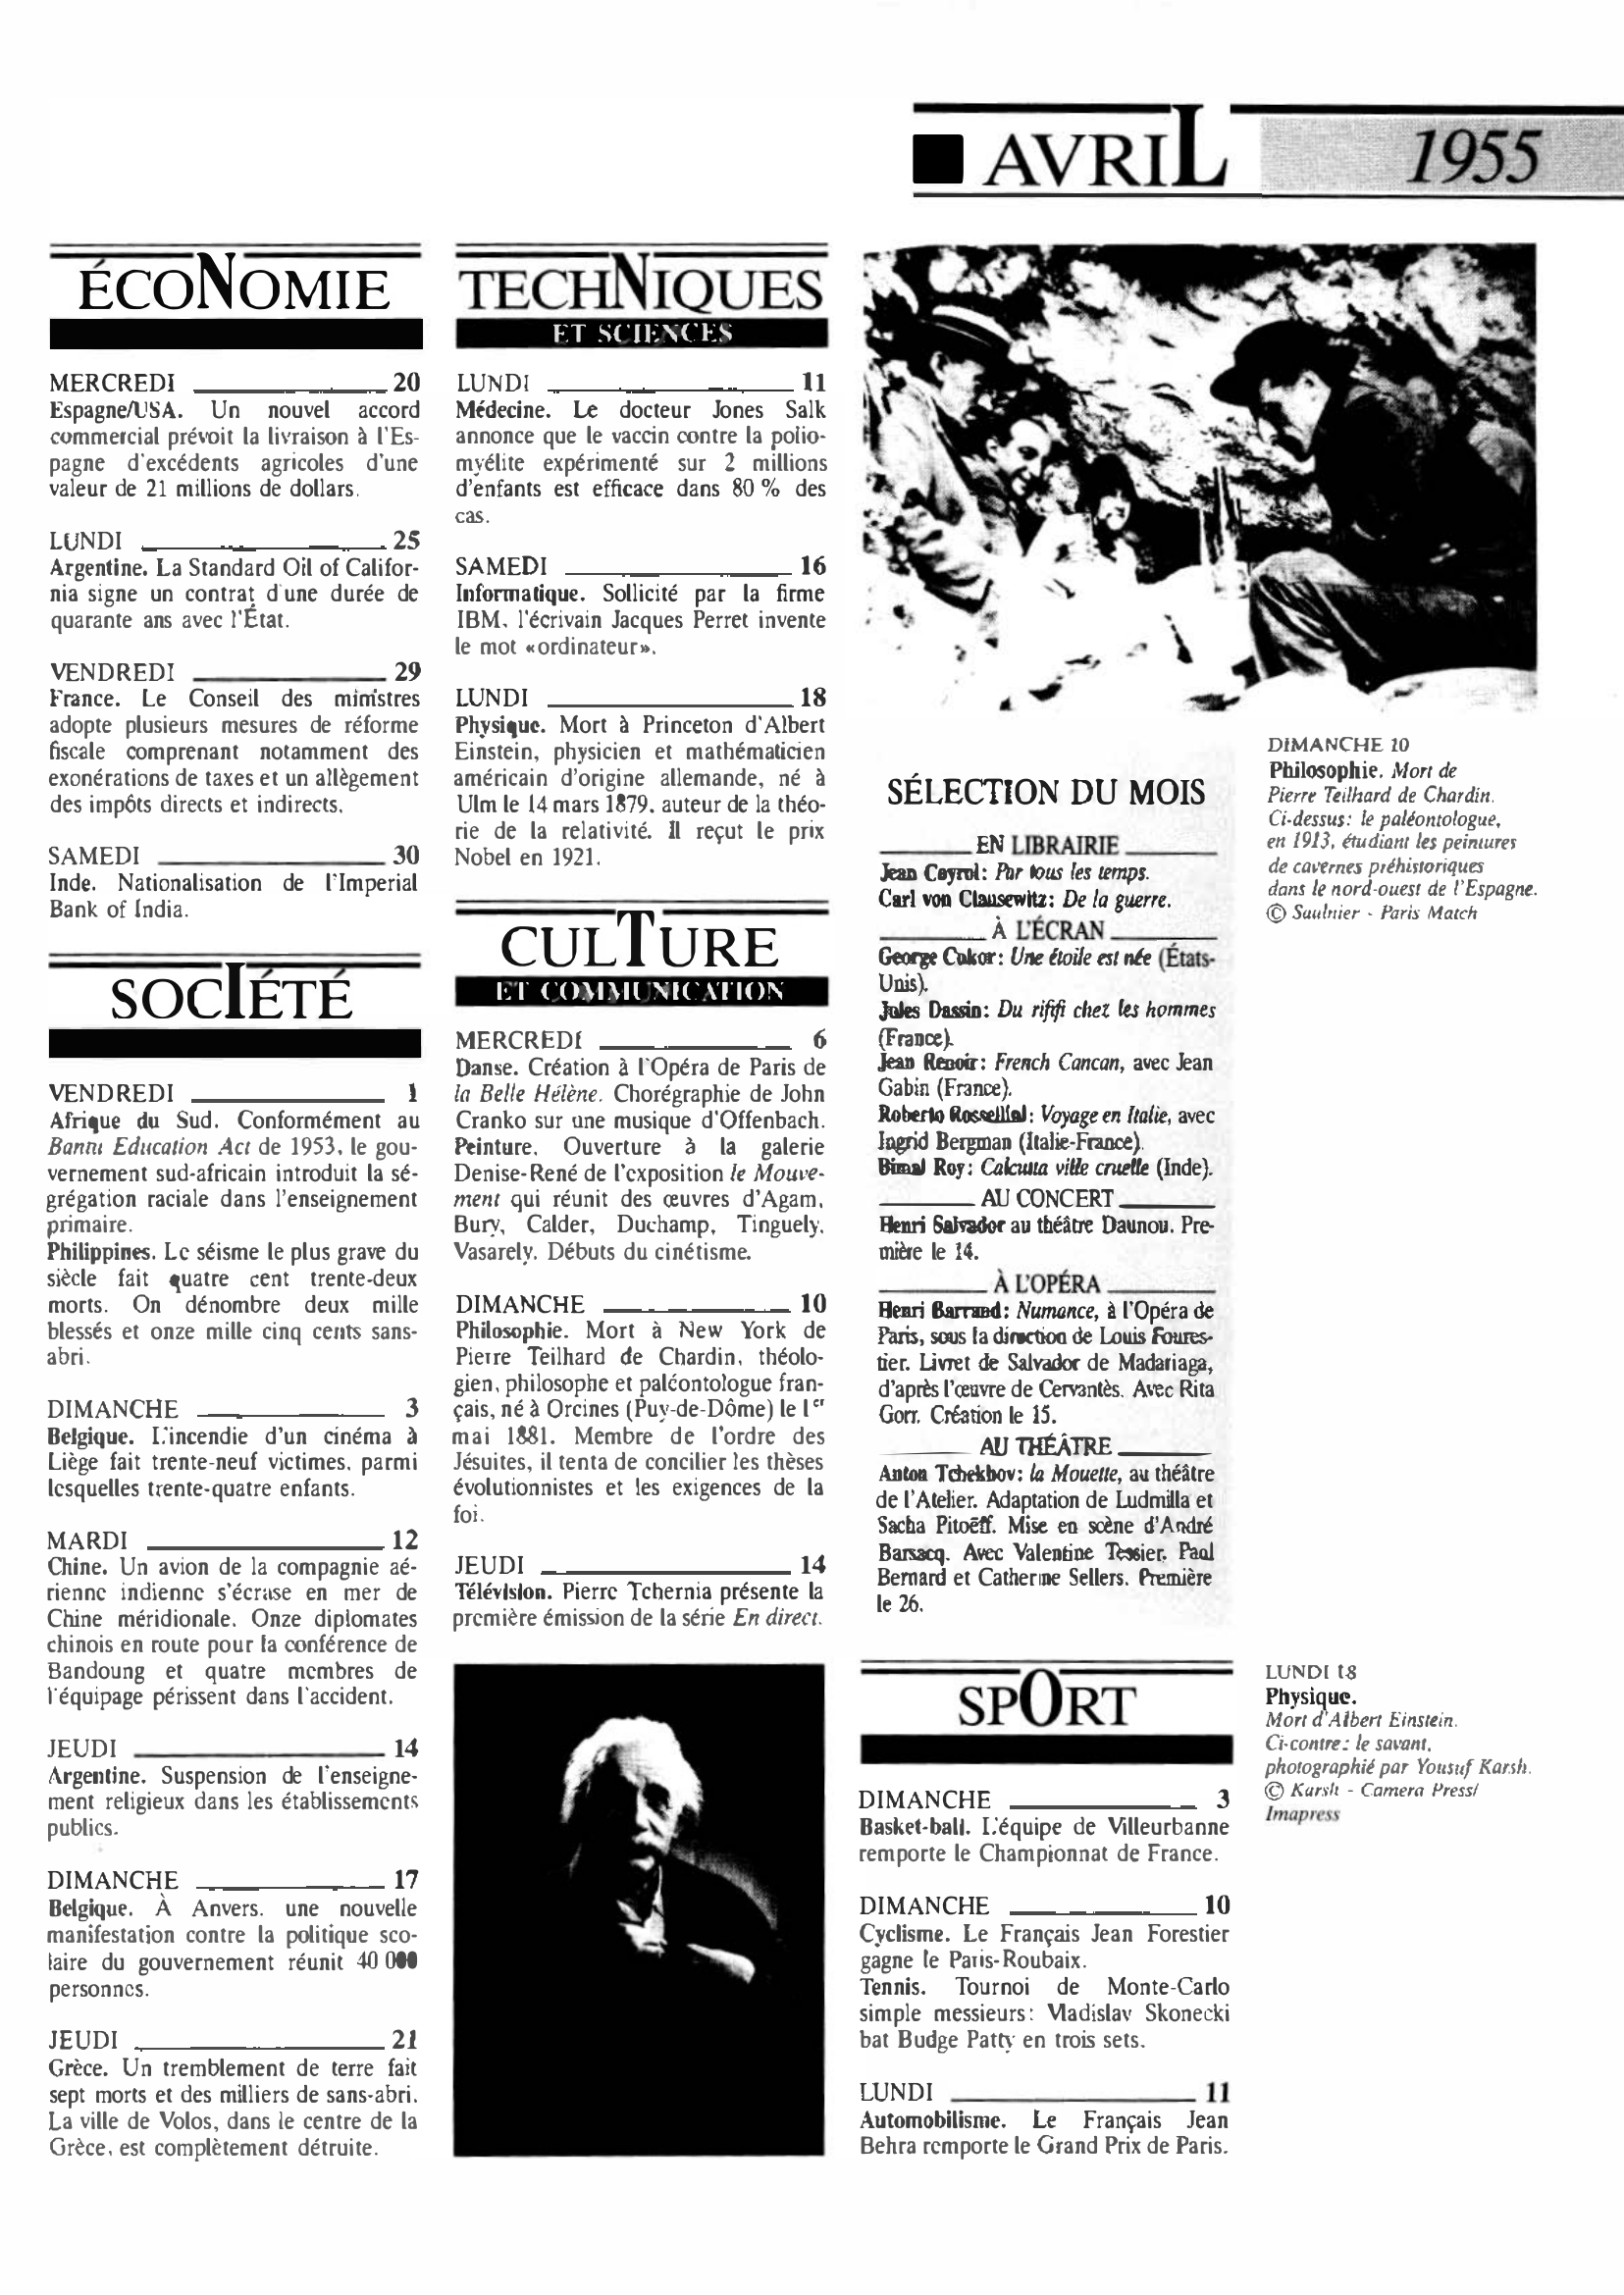 Prévisualisation du document 1955 Avril dans le monde (histoire chronologique)